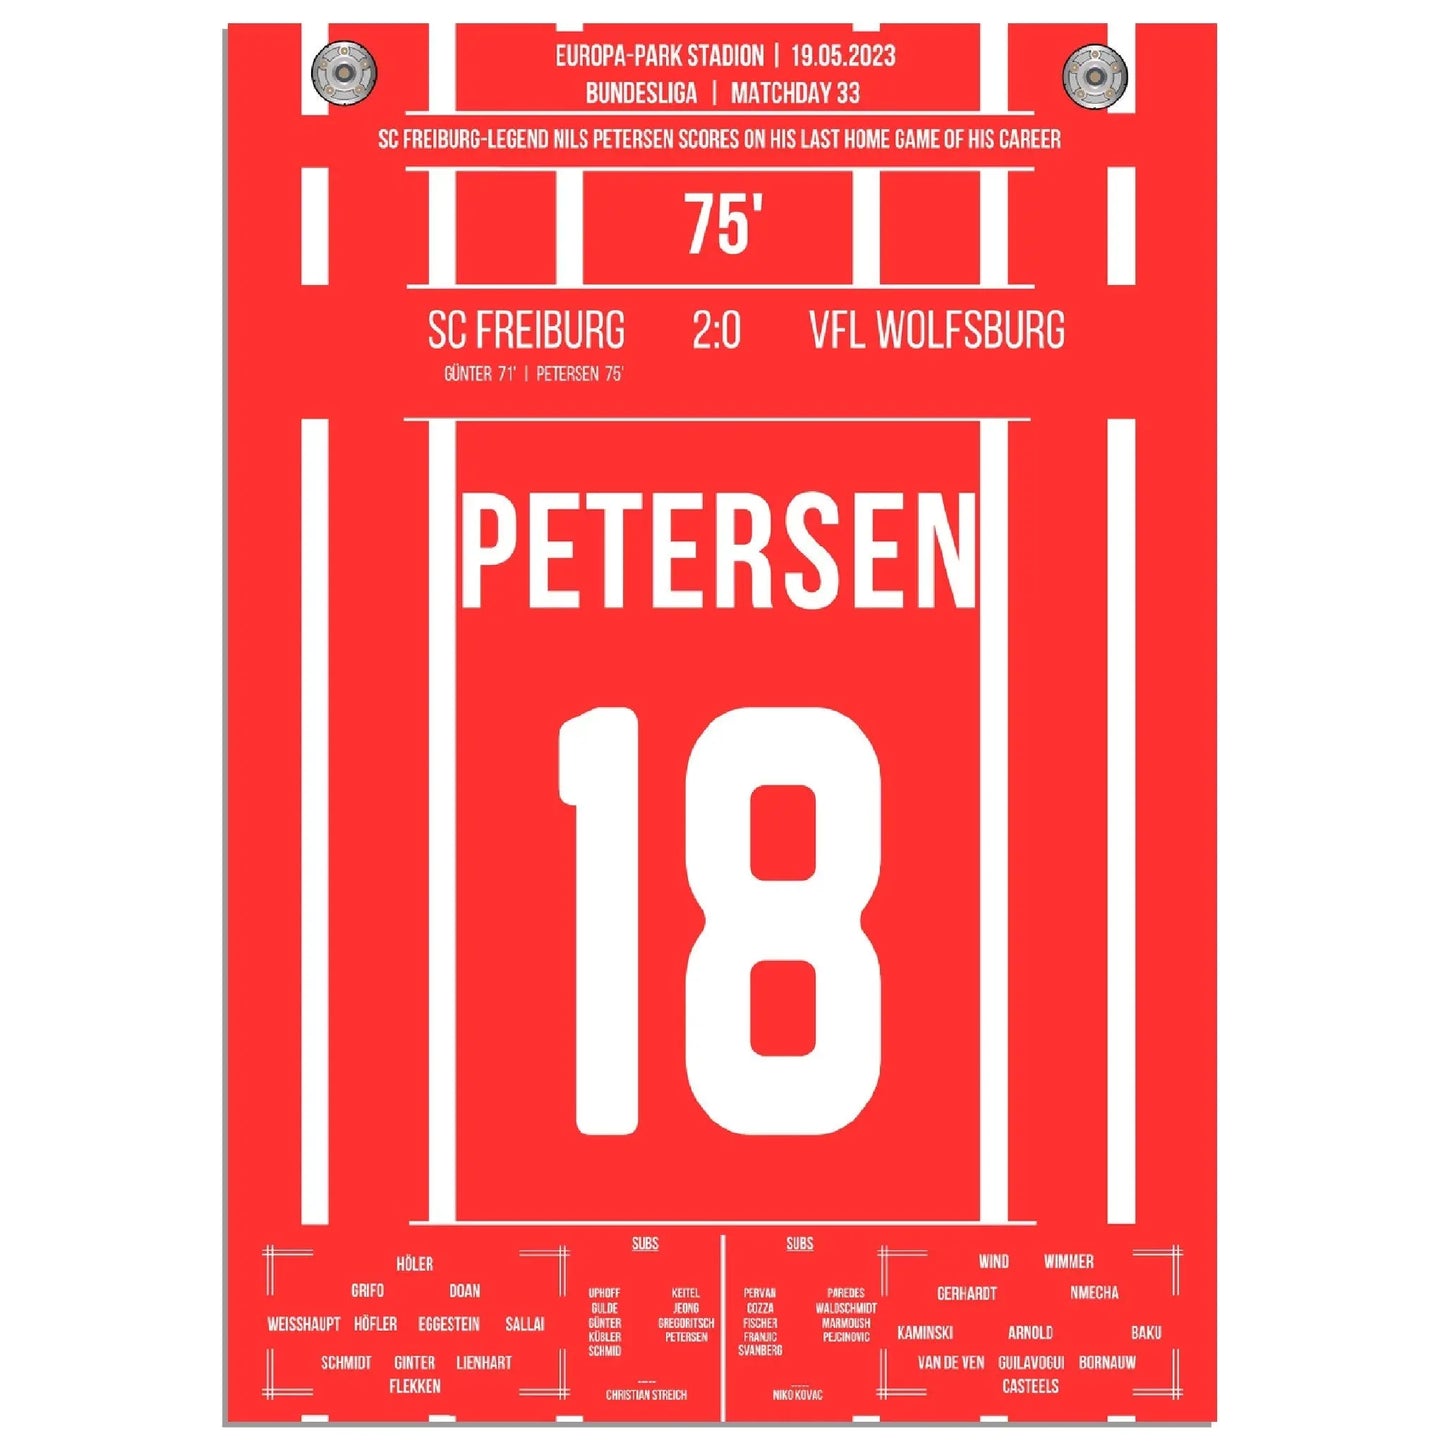 Petersens perfekter Abschied - Treffer im letzten Heimspiel für Freiburg 